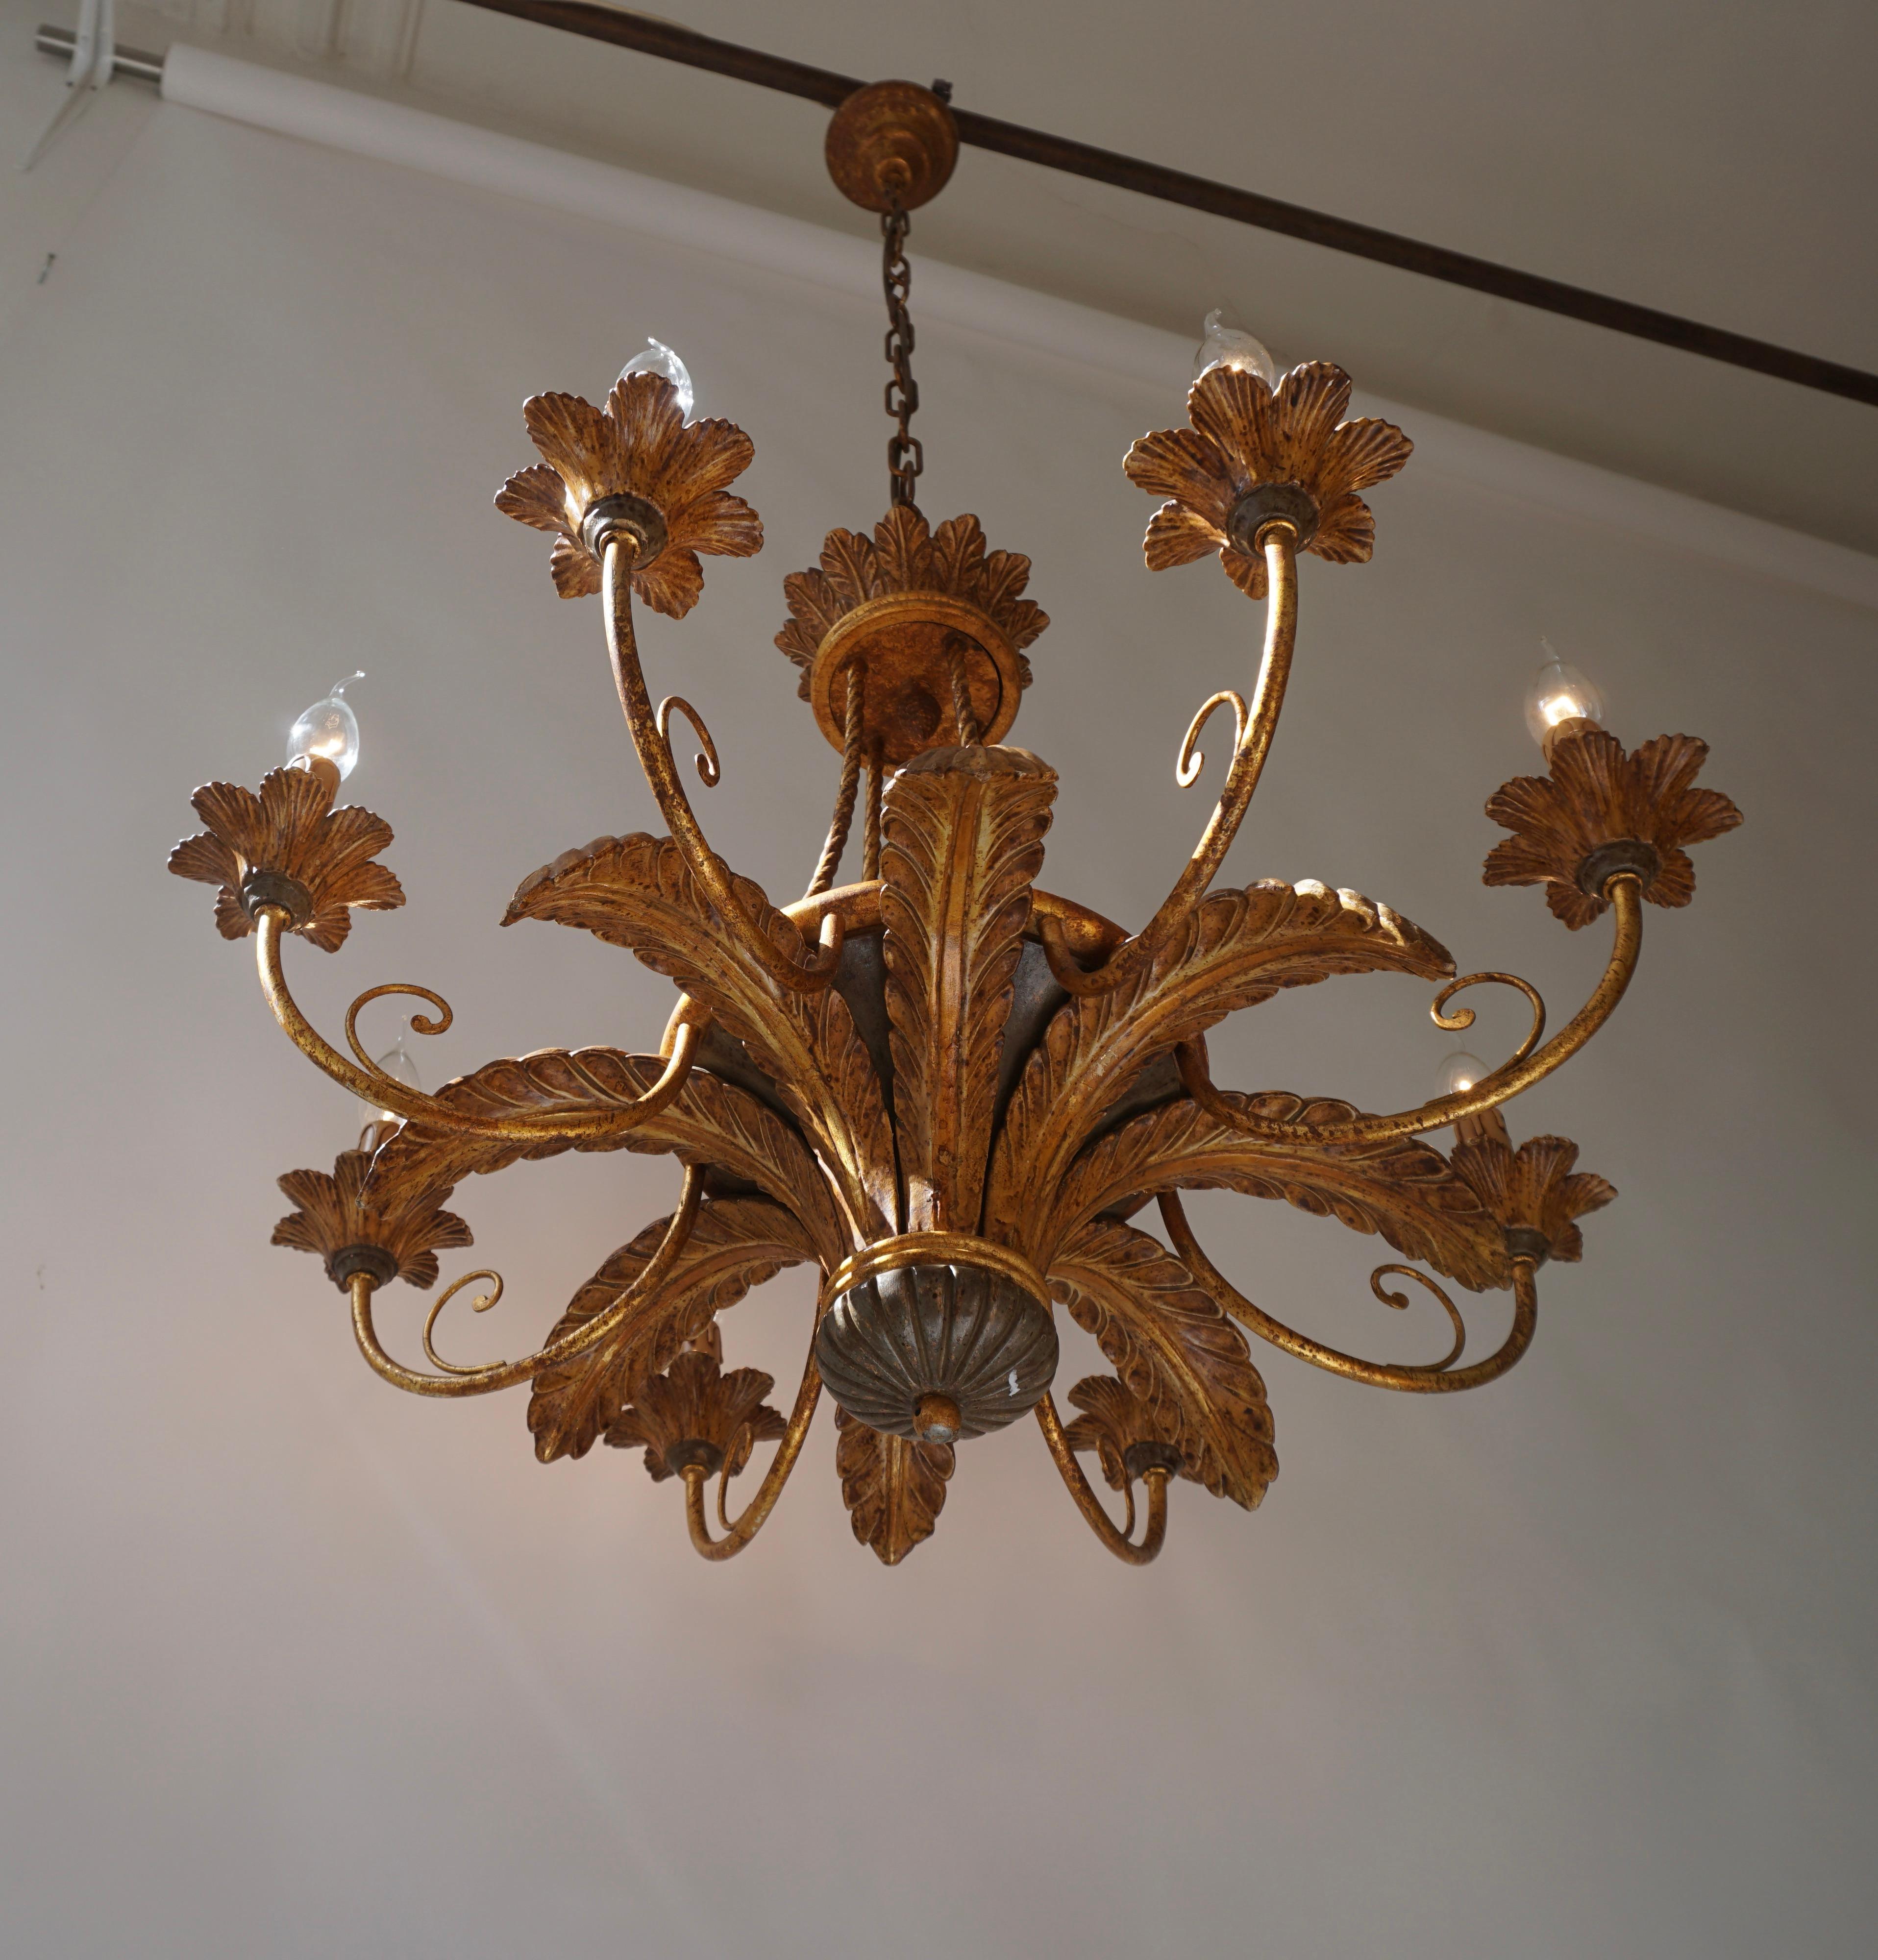 Italienischer vergoldeter Rokoko-Kronleuchter mit acht Armen.

Dieser großformatige Kronleuchter ist einer Antiquität aus dem 17. Jahrhundert nachempfunden, wobei die Arme aus Stahl und die Ornamente aus patiniertem Kunststoff gefertigt sind.


Die